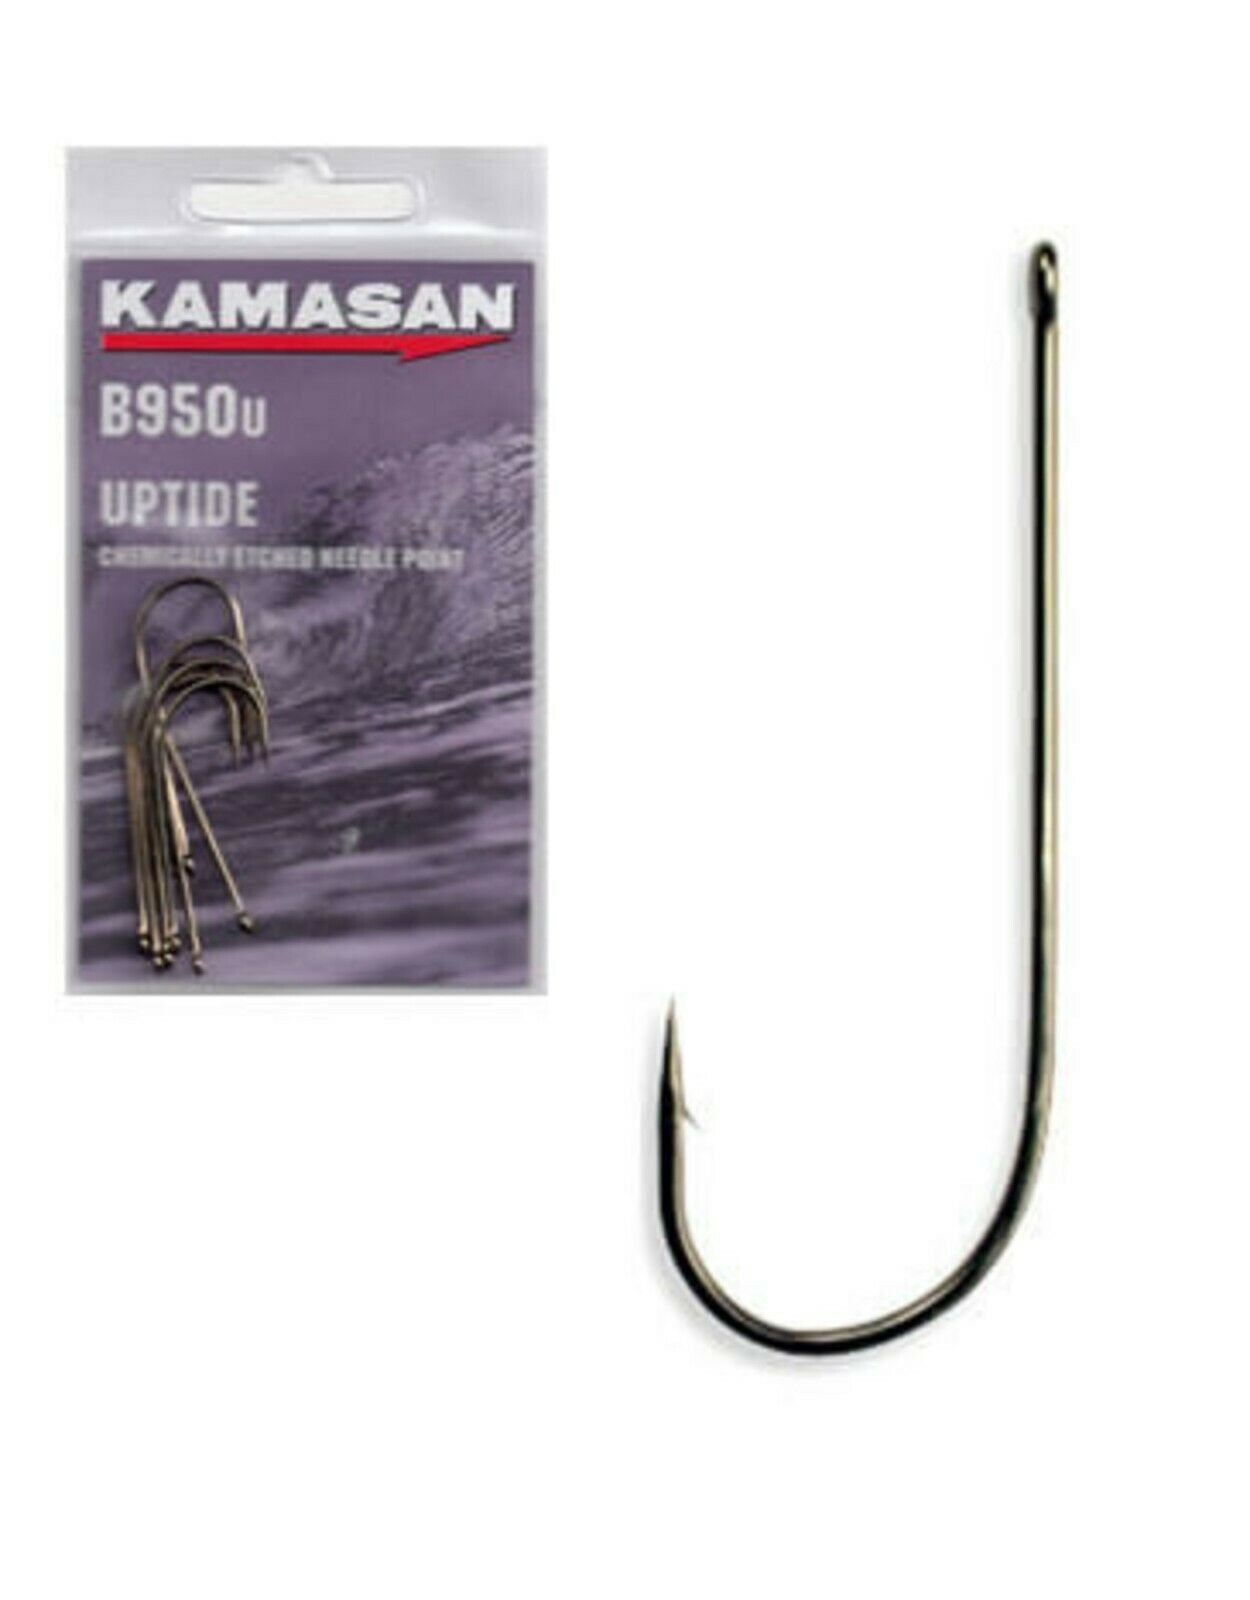 Kamasan B950u UPTIDE Chemically Etched Sea Fishing Hooks Size 3/0